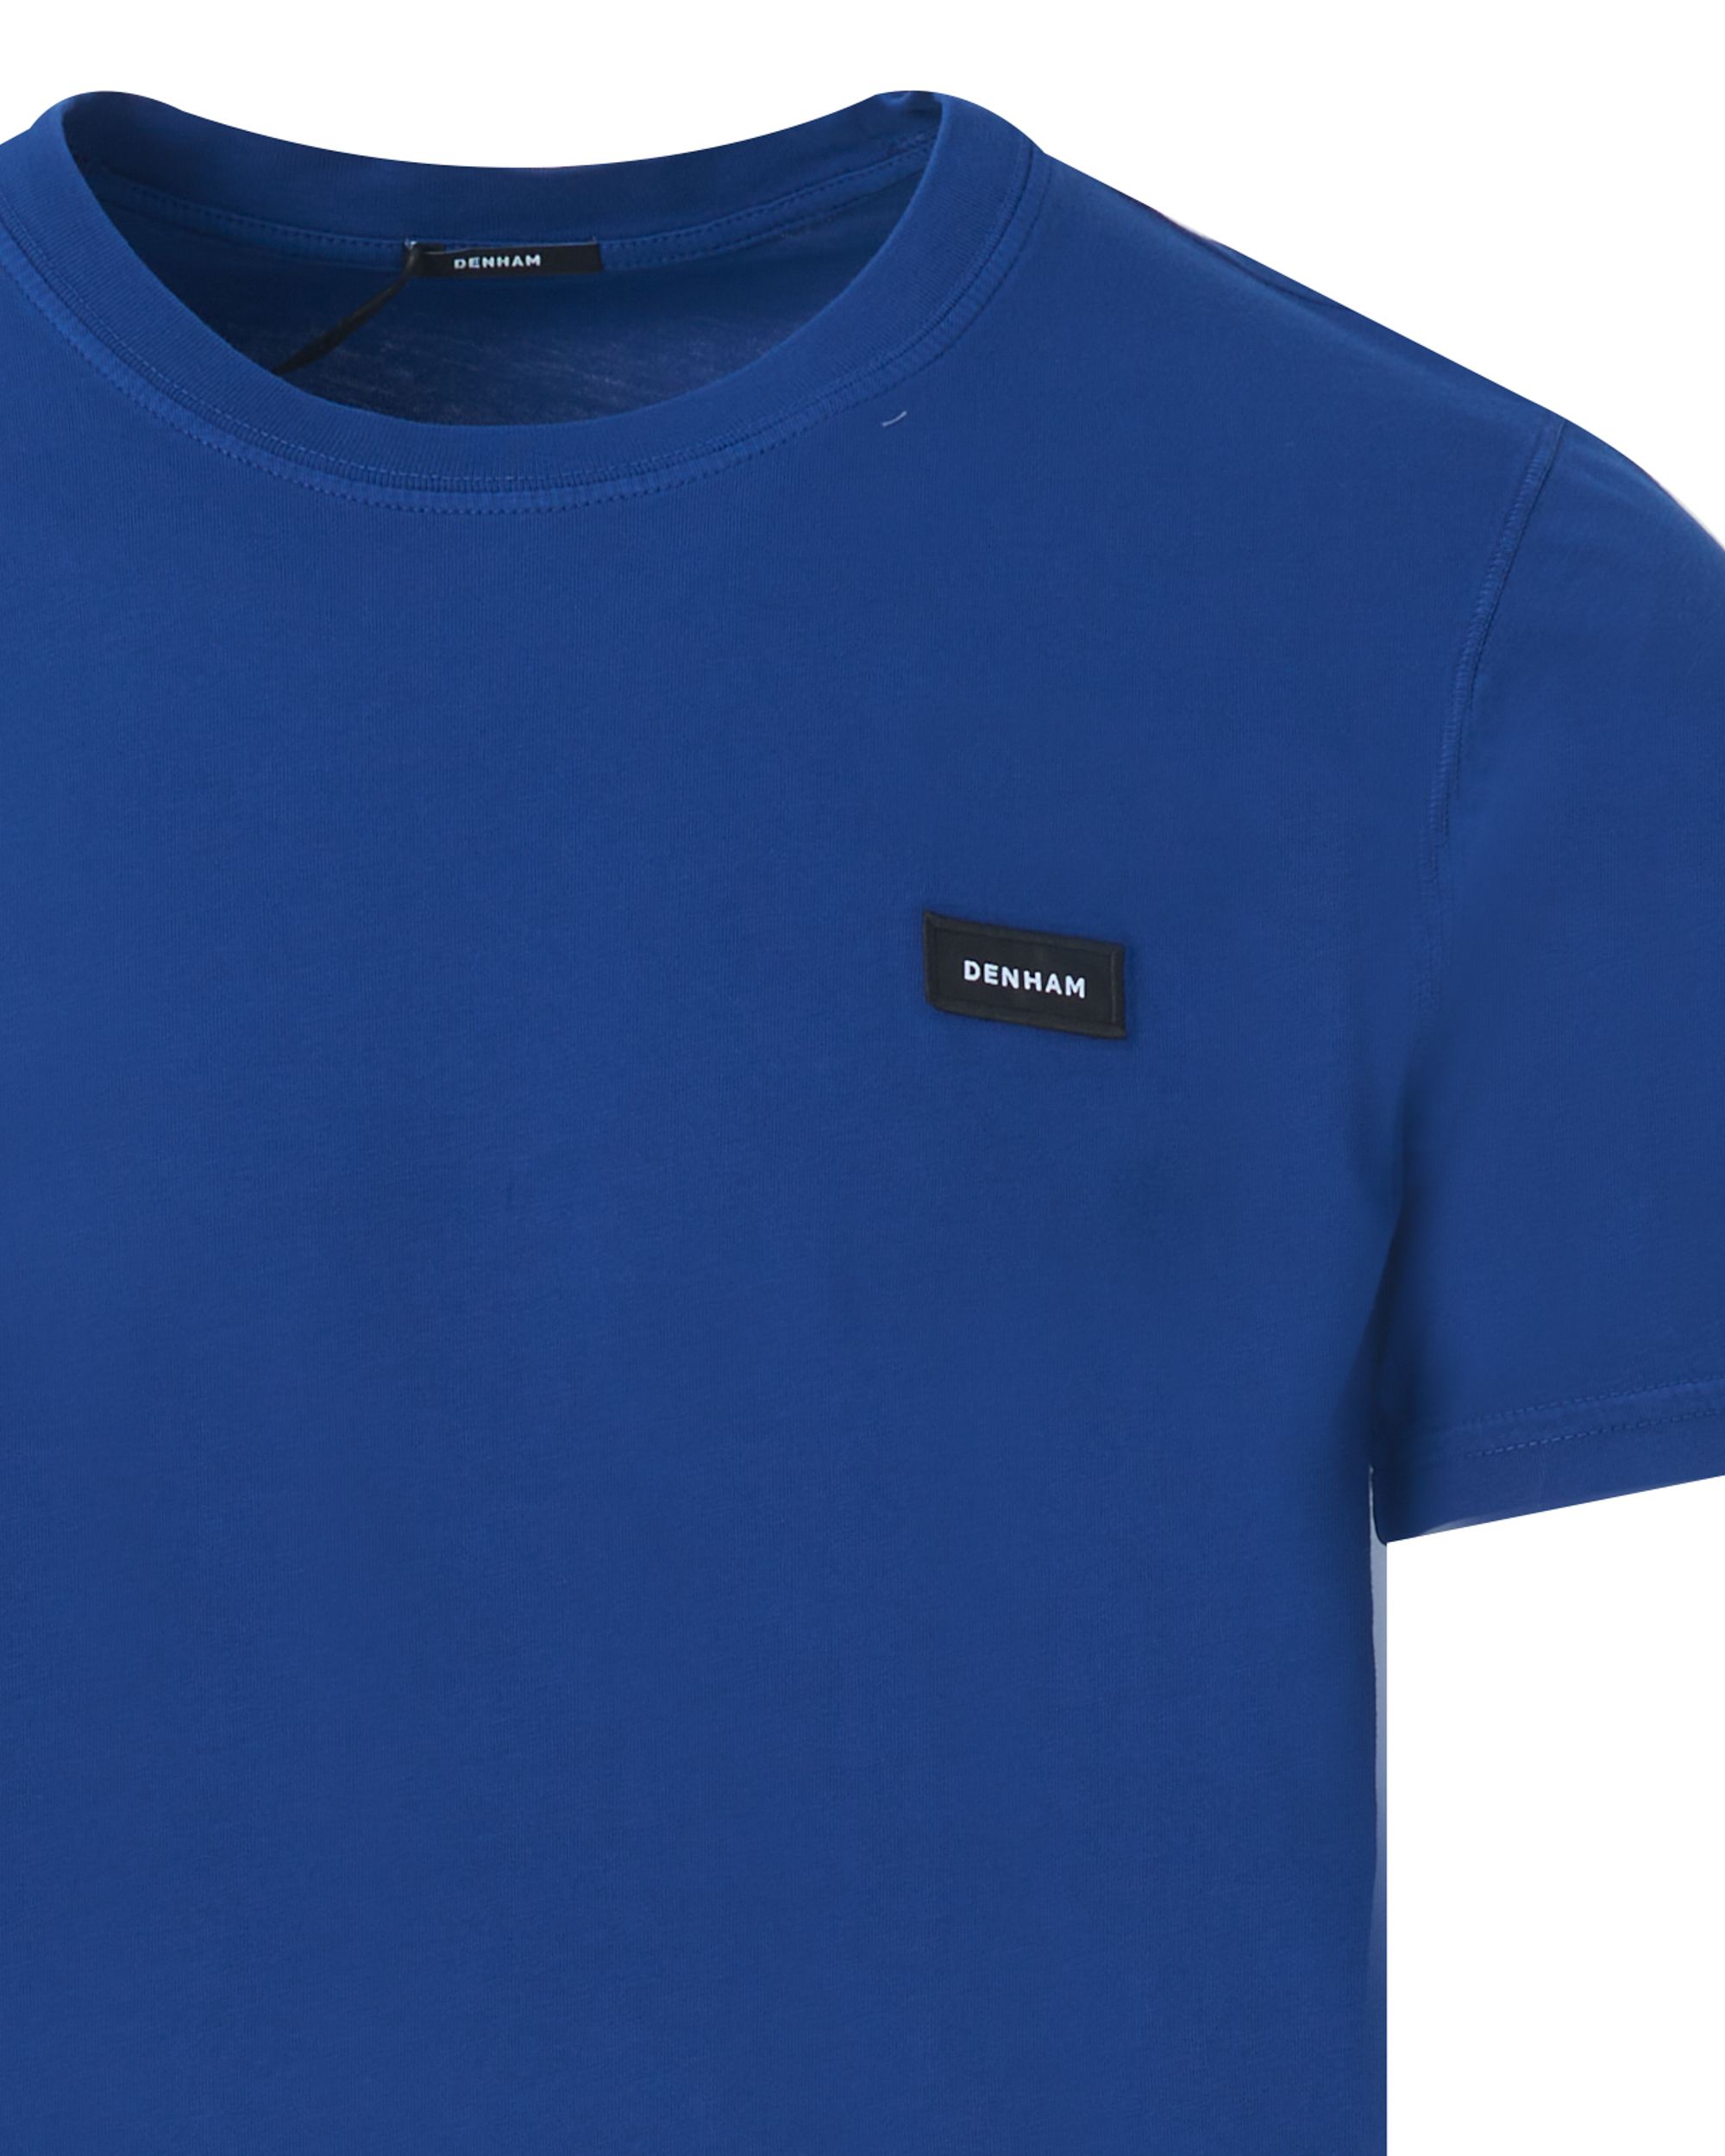 DENHAM Slim T-shirt KM Kobalt 085161-001-L